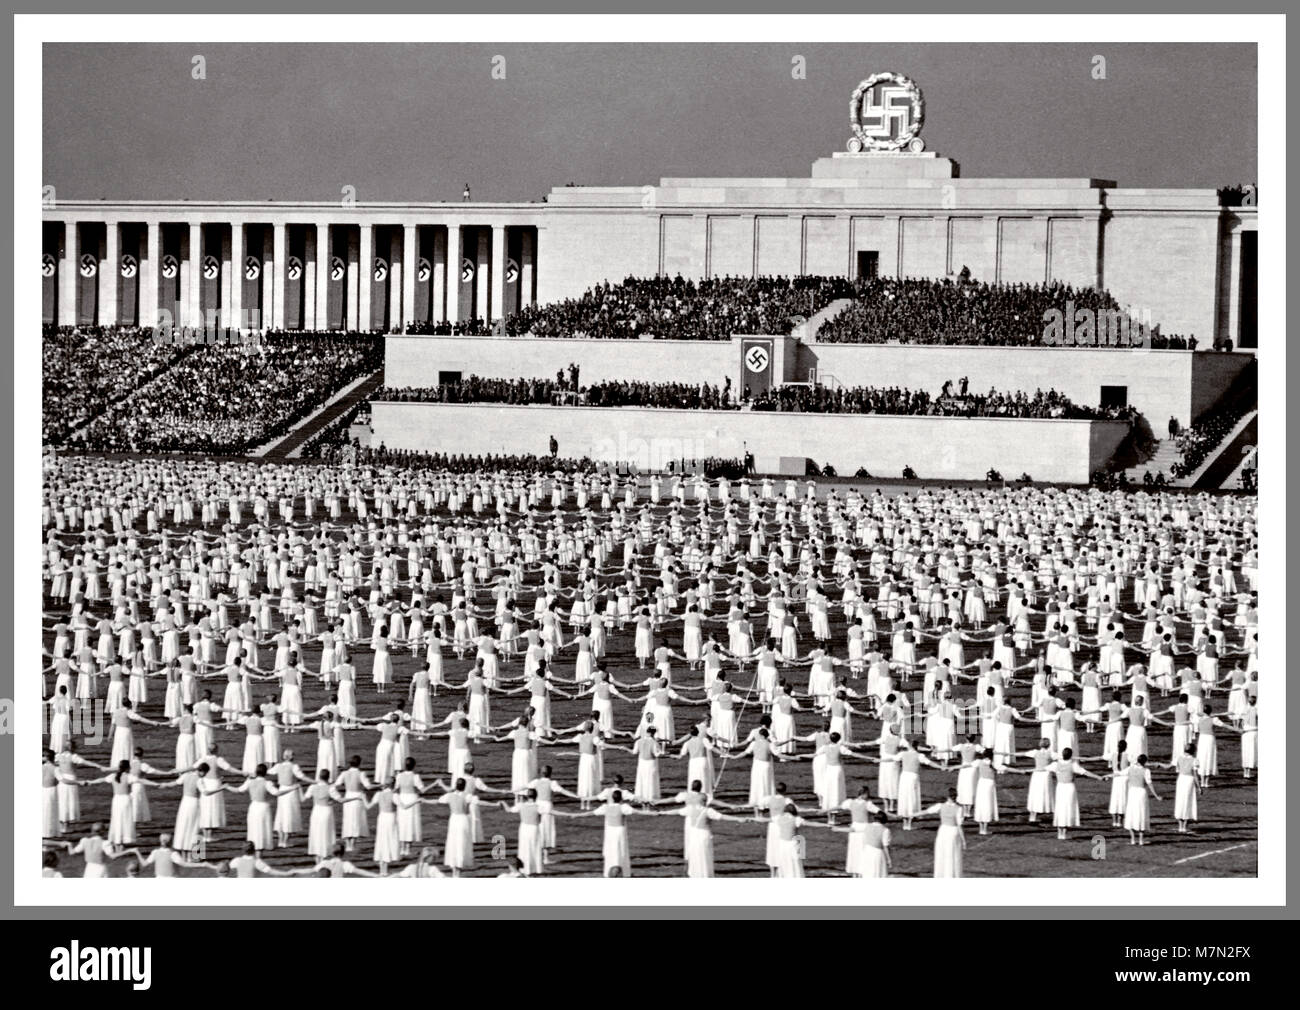 La propagande nazie de 1930 Droit de Nuremberg Rally Reichsparteitag Realm congrès du parti. C'était le rassemblement annuel du parti nazi en Allemagne, qui a eu lieu de 1923 à 1938. Ils étaient de grands événements de propagande nazie, surtout après la montée d'Adolf Hitler au pouvoir en 1933. Ces événements ont eu lieu au rassemblement du parti nazi à Nuremberg, de 1933 à 1938 et sont généralement appelés les "Rassemblements de Nuremberg". Banque D'Images